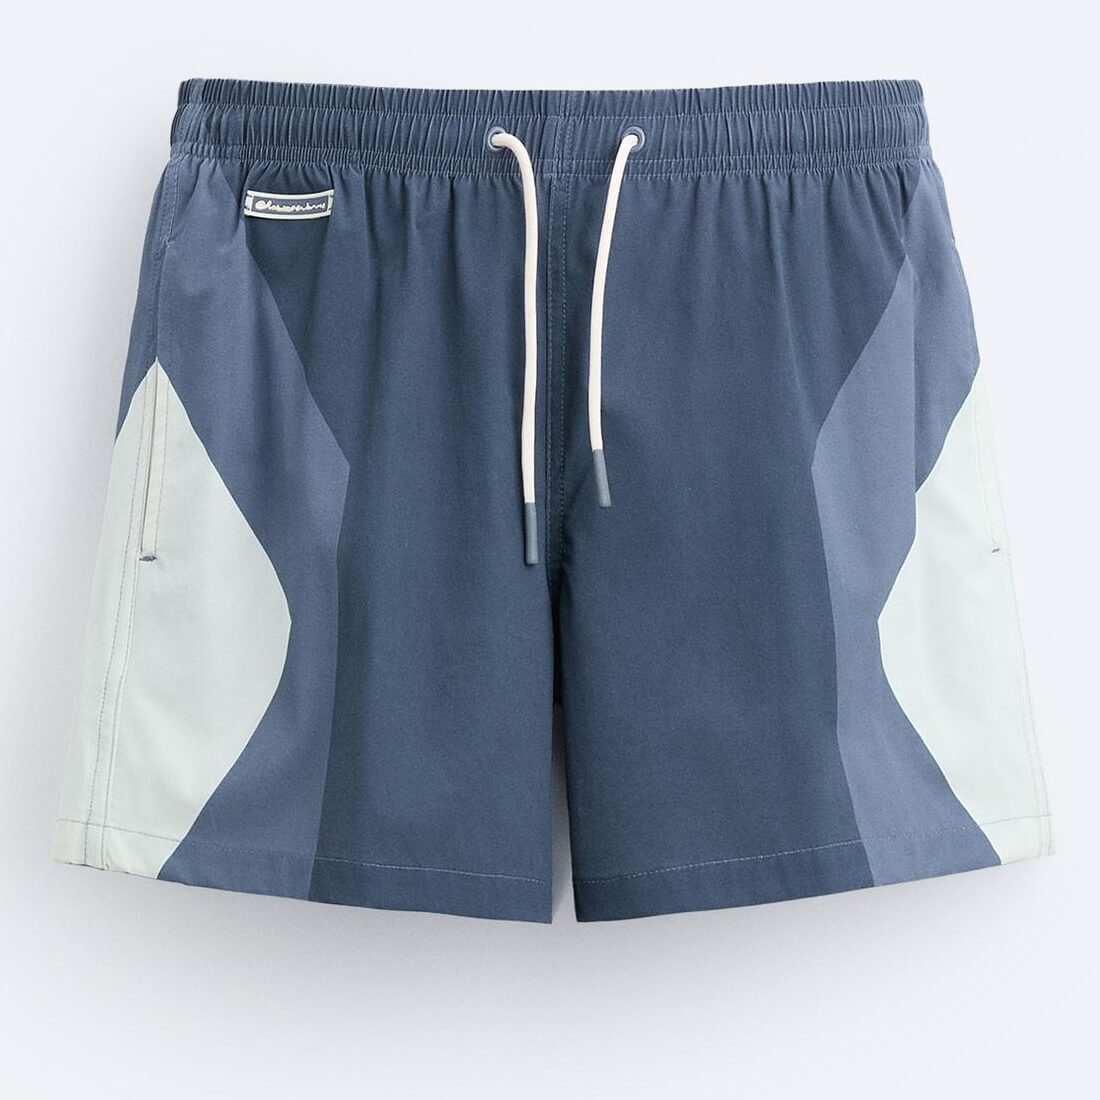 Плавательные шорты Zara Colour Block, синий/серый толстовка zara colour block with stripes синий зеленый